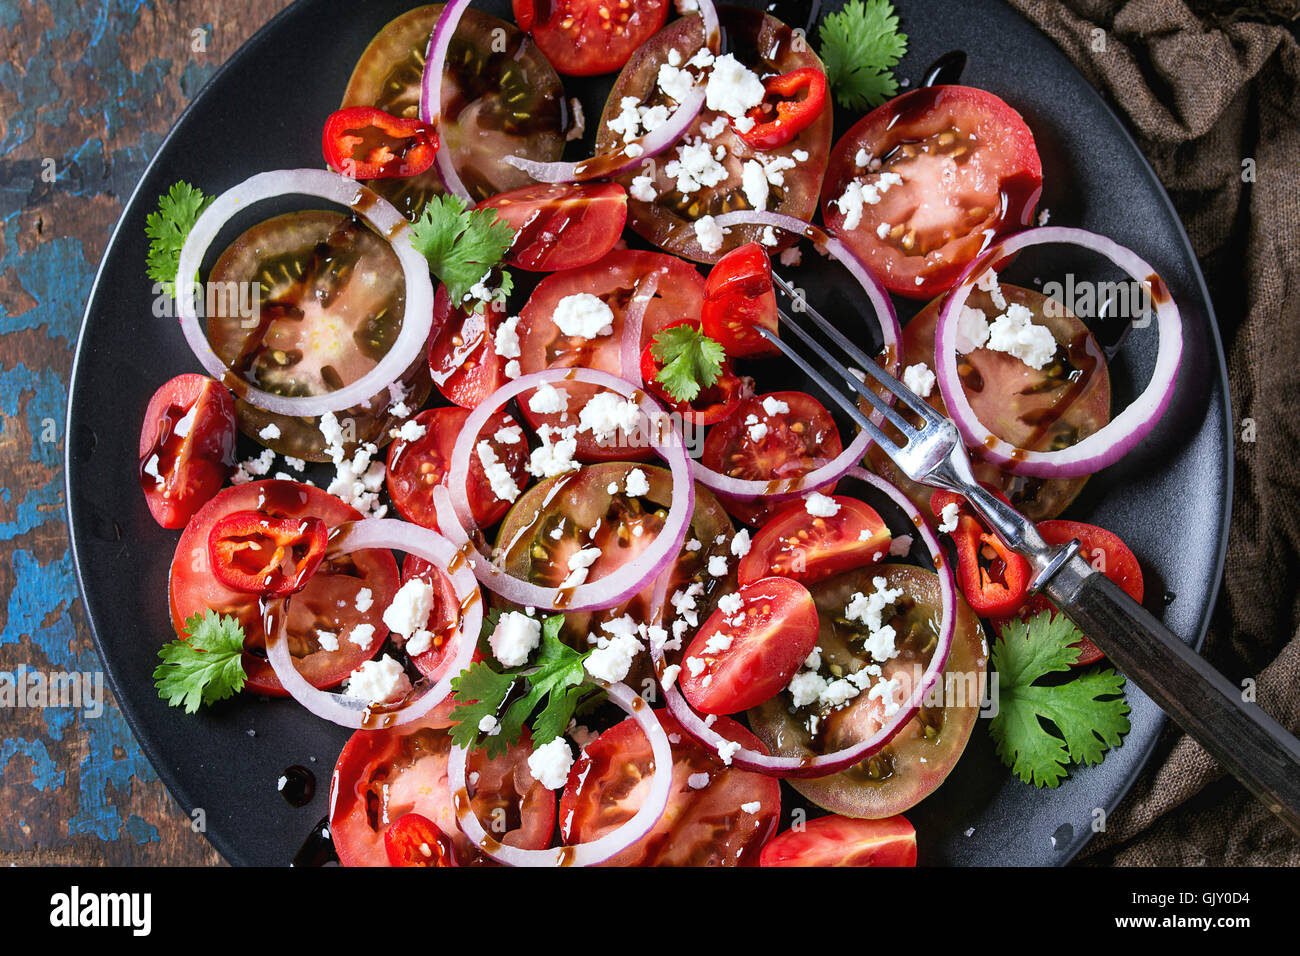 Plaque noire avec des tranches de tomates différentes, l'oignon rouge, vinaigre balsamique, le persil et sause fromage feta salade, servi avec la fourchette sur humide sa Banque D'Images